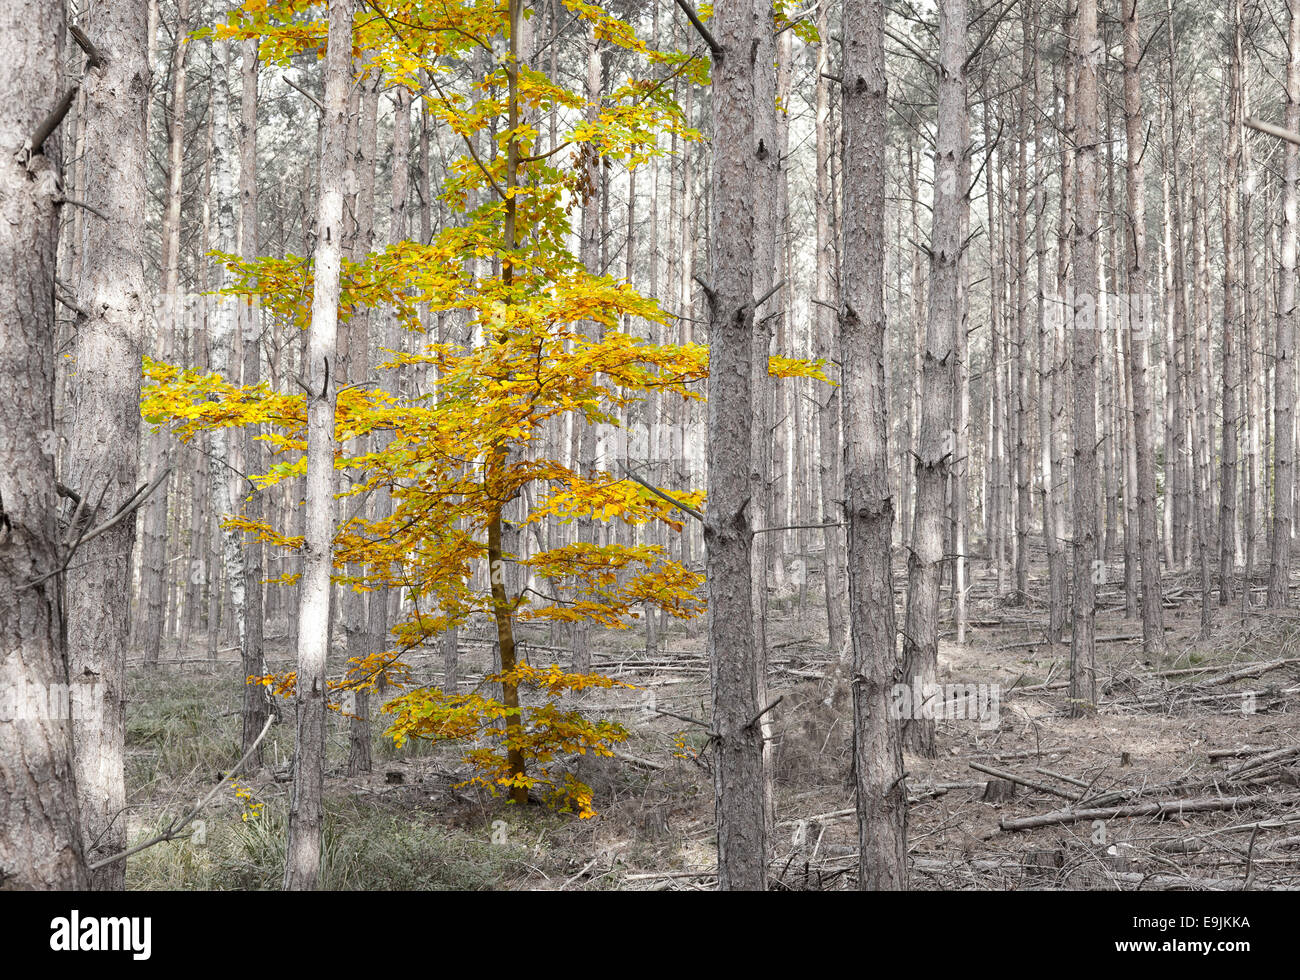 Hojas de Otoño de un solo árbol caducifolio de entre pinos, Dahlen, Sajonia, Alemania Foto de stock